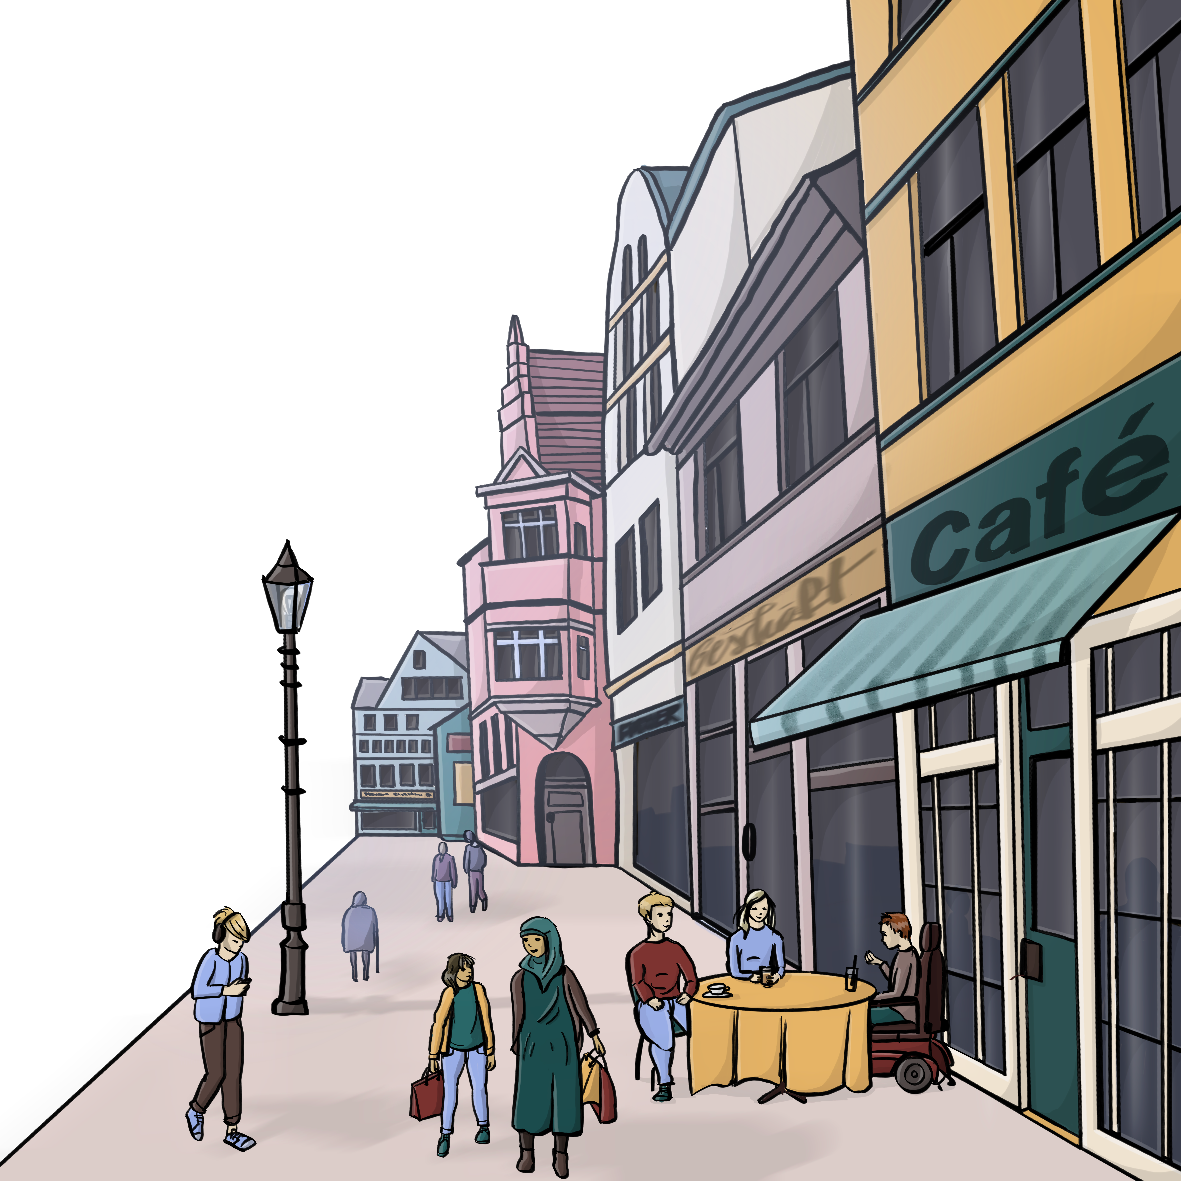 Eine Fußgängerzone mit Menschen, Läden und einem Cafe.